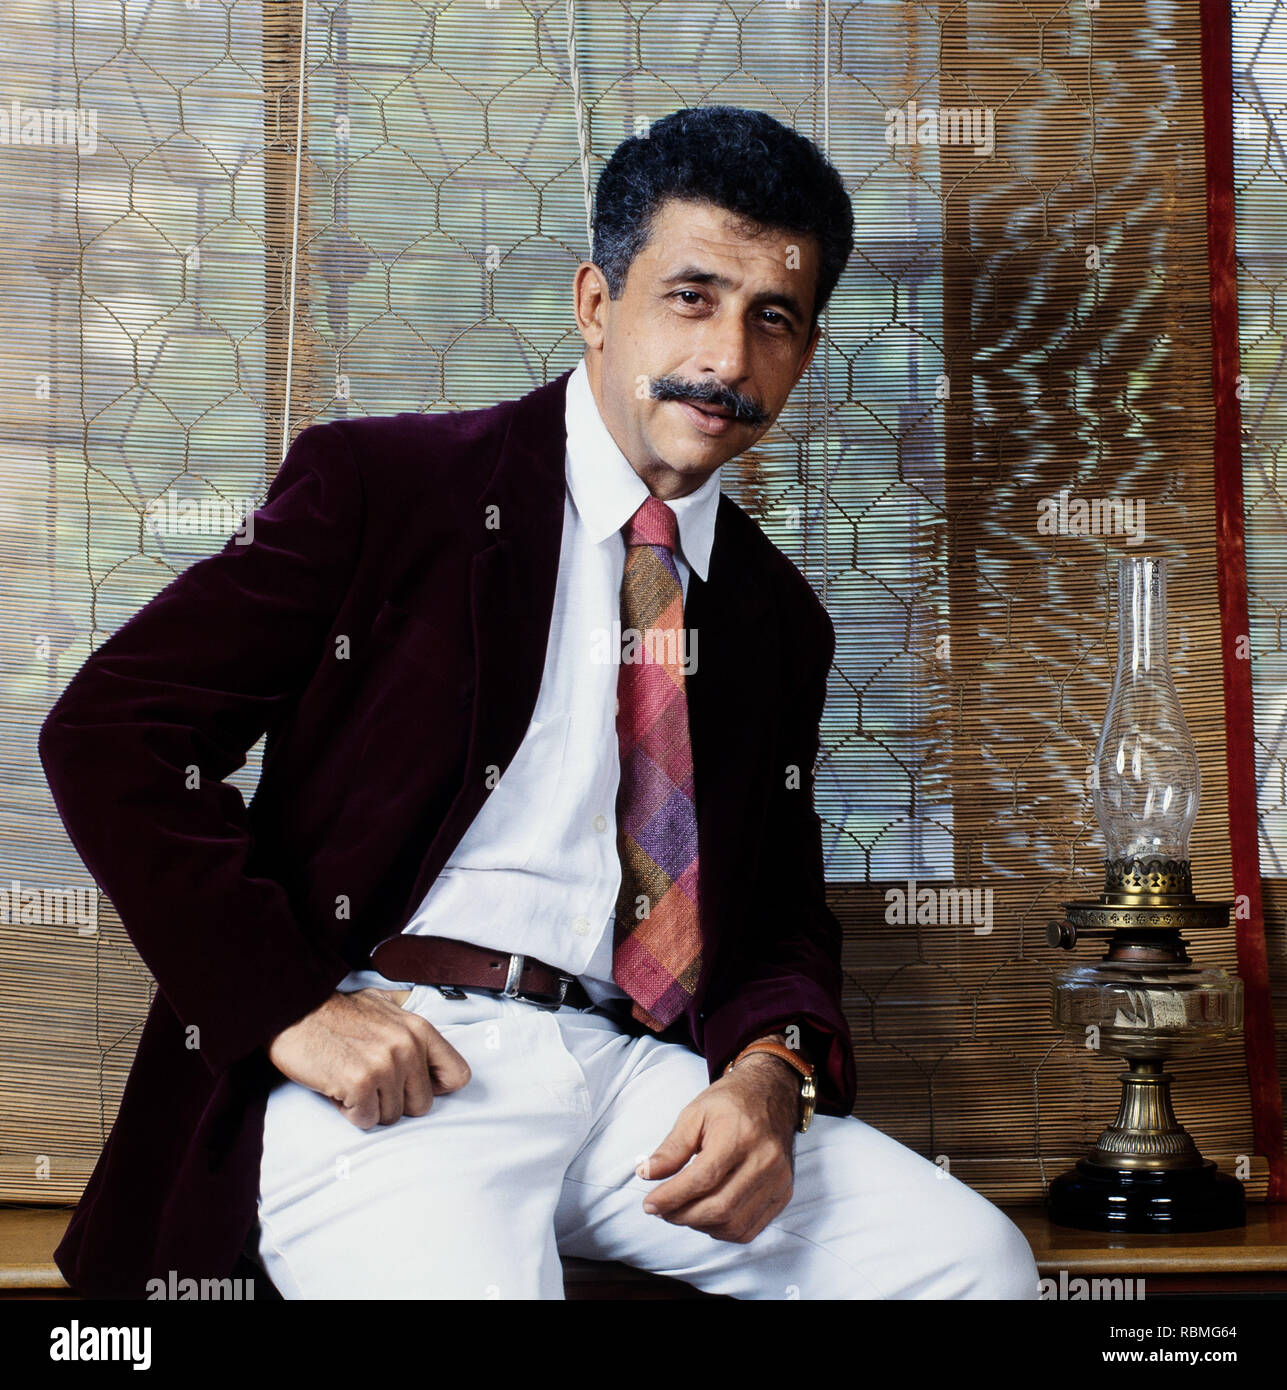 Portrait of Naseeruddin Shah sitting on table, India, Asia Stock Photo